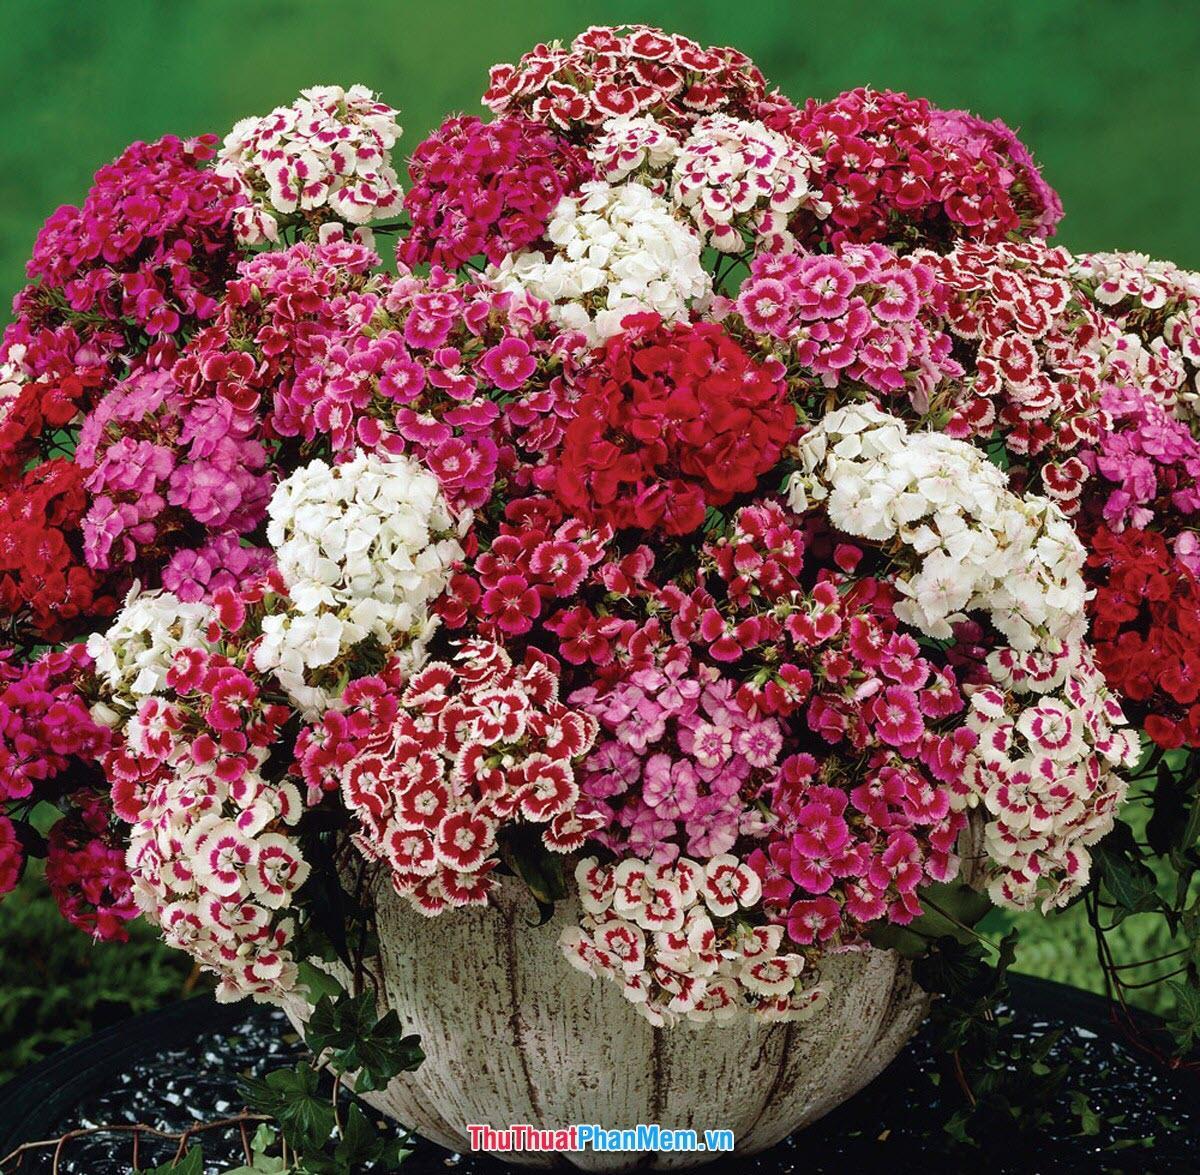 Chậu hoa cẩm chướng khoe sắc để tặng vợ và người yêu nhân ngày mùng 8 tháng 3